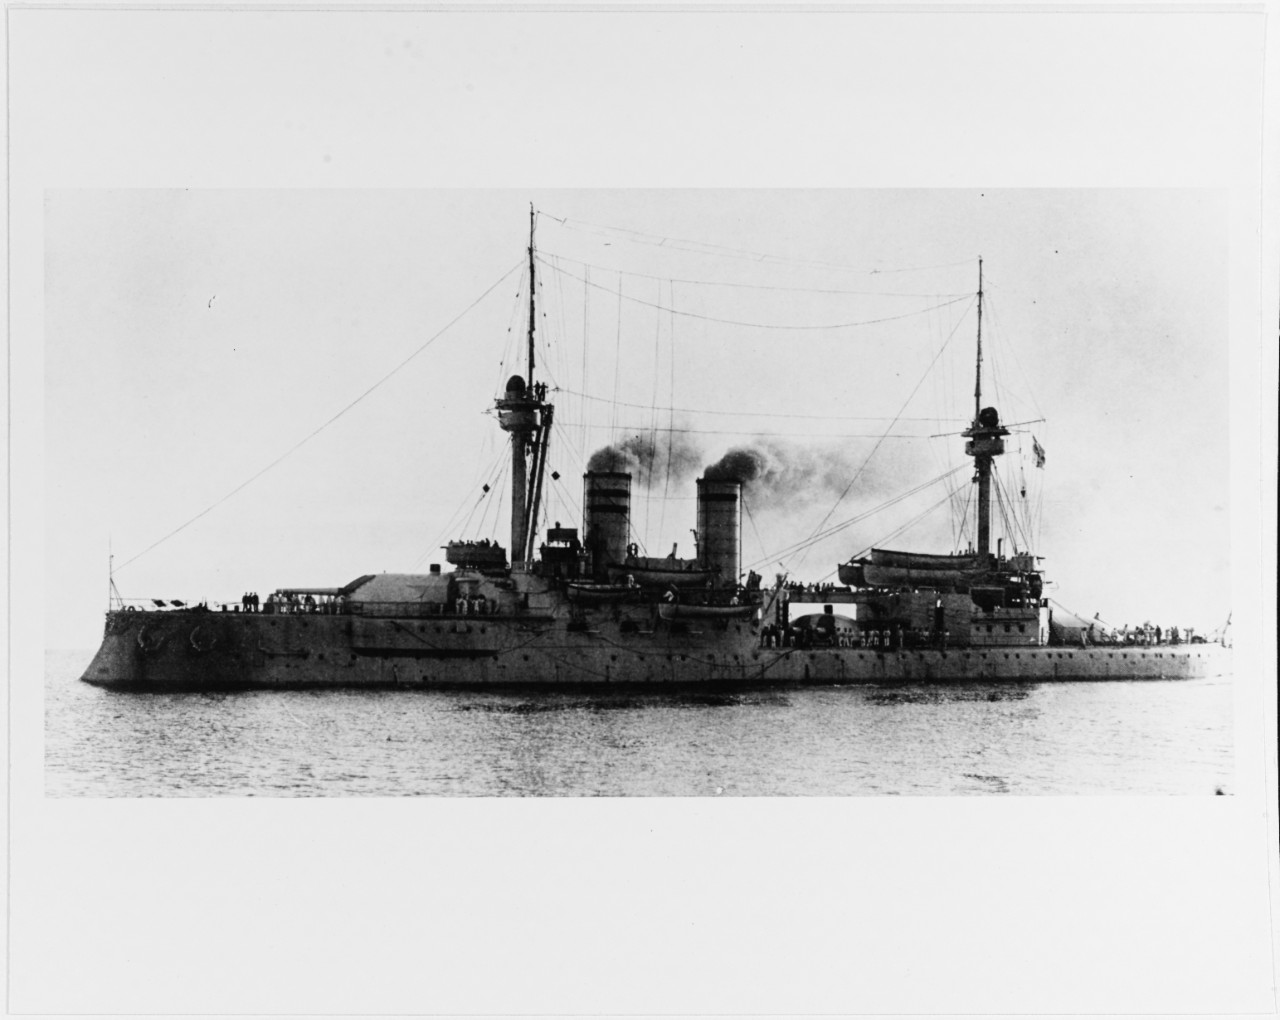 WEISSENBURG (German battleship, 1891-1938)